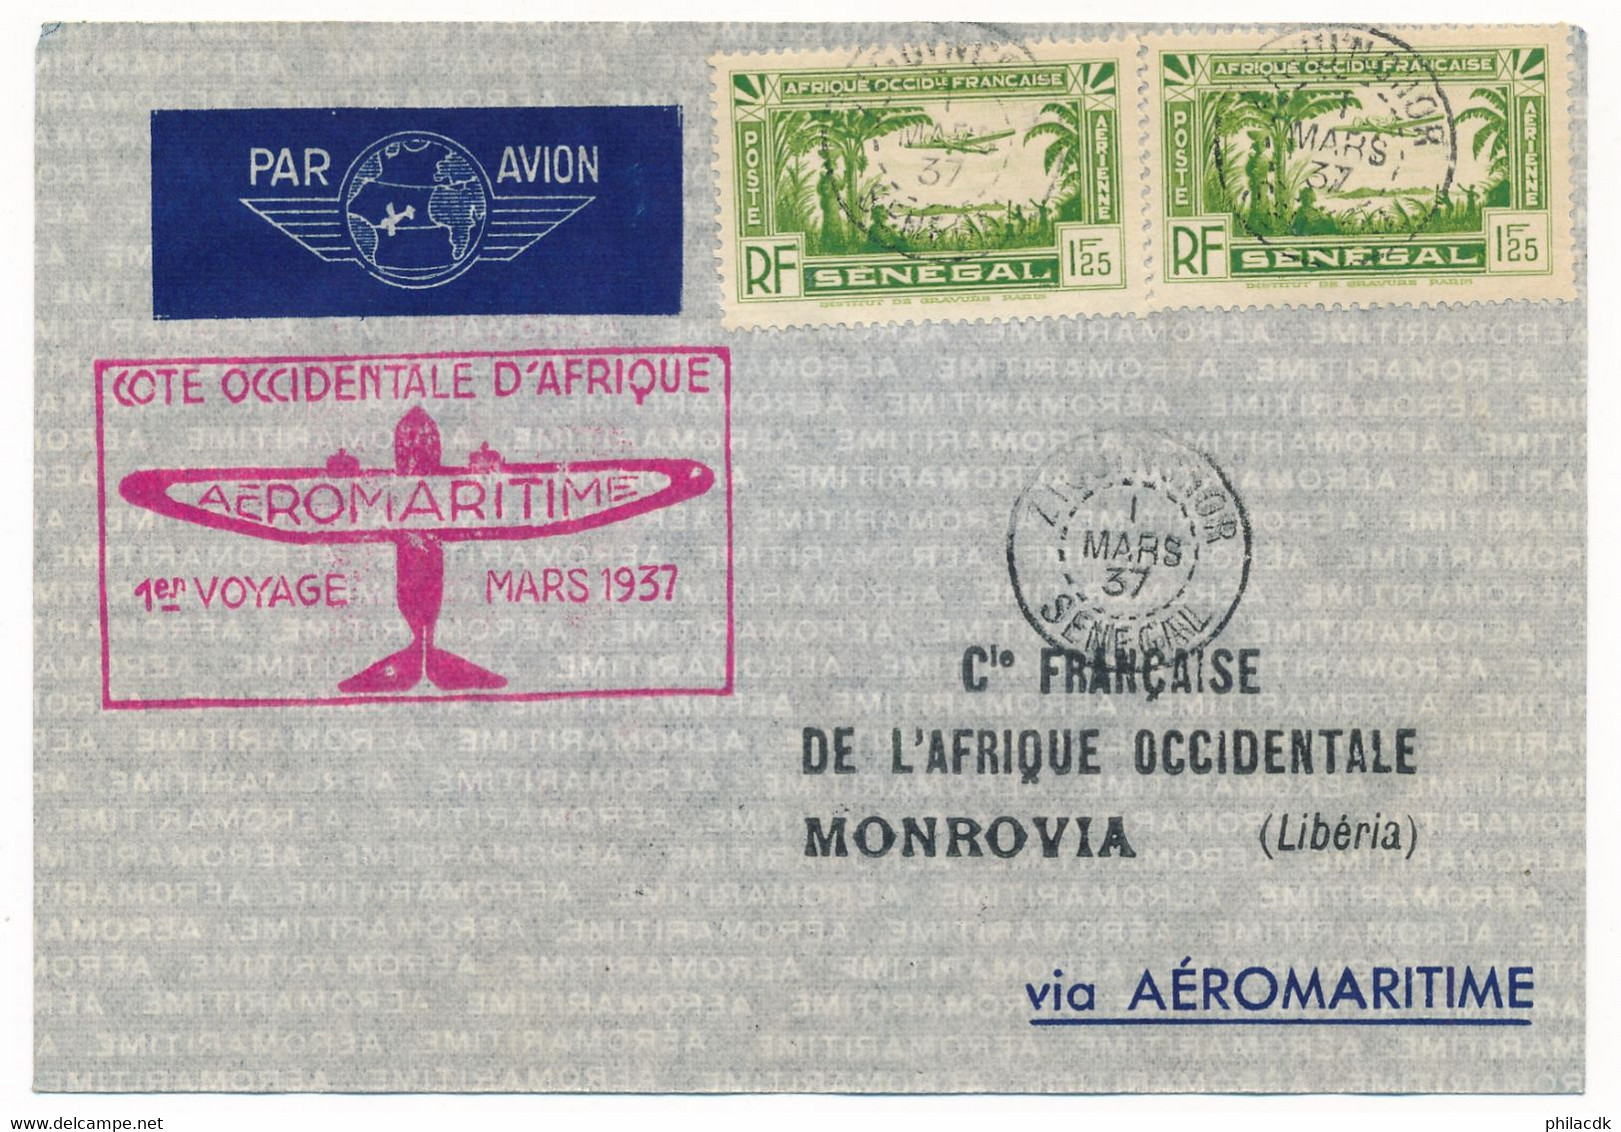 SENEGAL - POSTE AERIENNE N° 4X2 SUR ENVELOPPE COTE OCCIDENTALE D AFRIQUE 1ER VOYAGE AEROMARITIME 1 MARS 1937 - Poste Aérienne